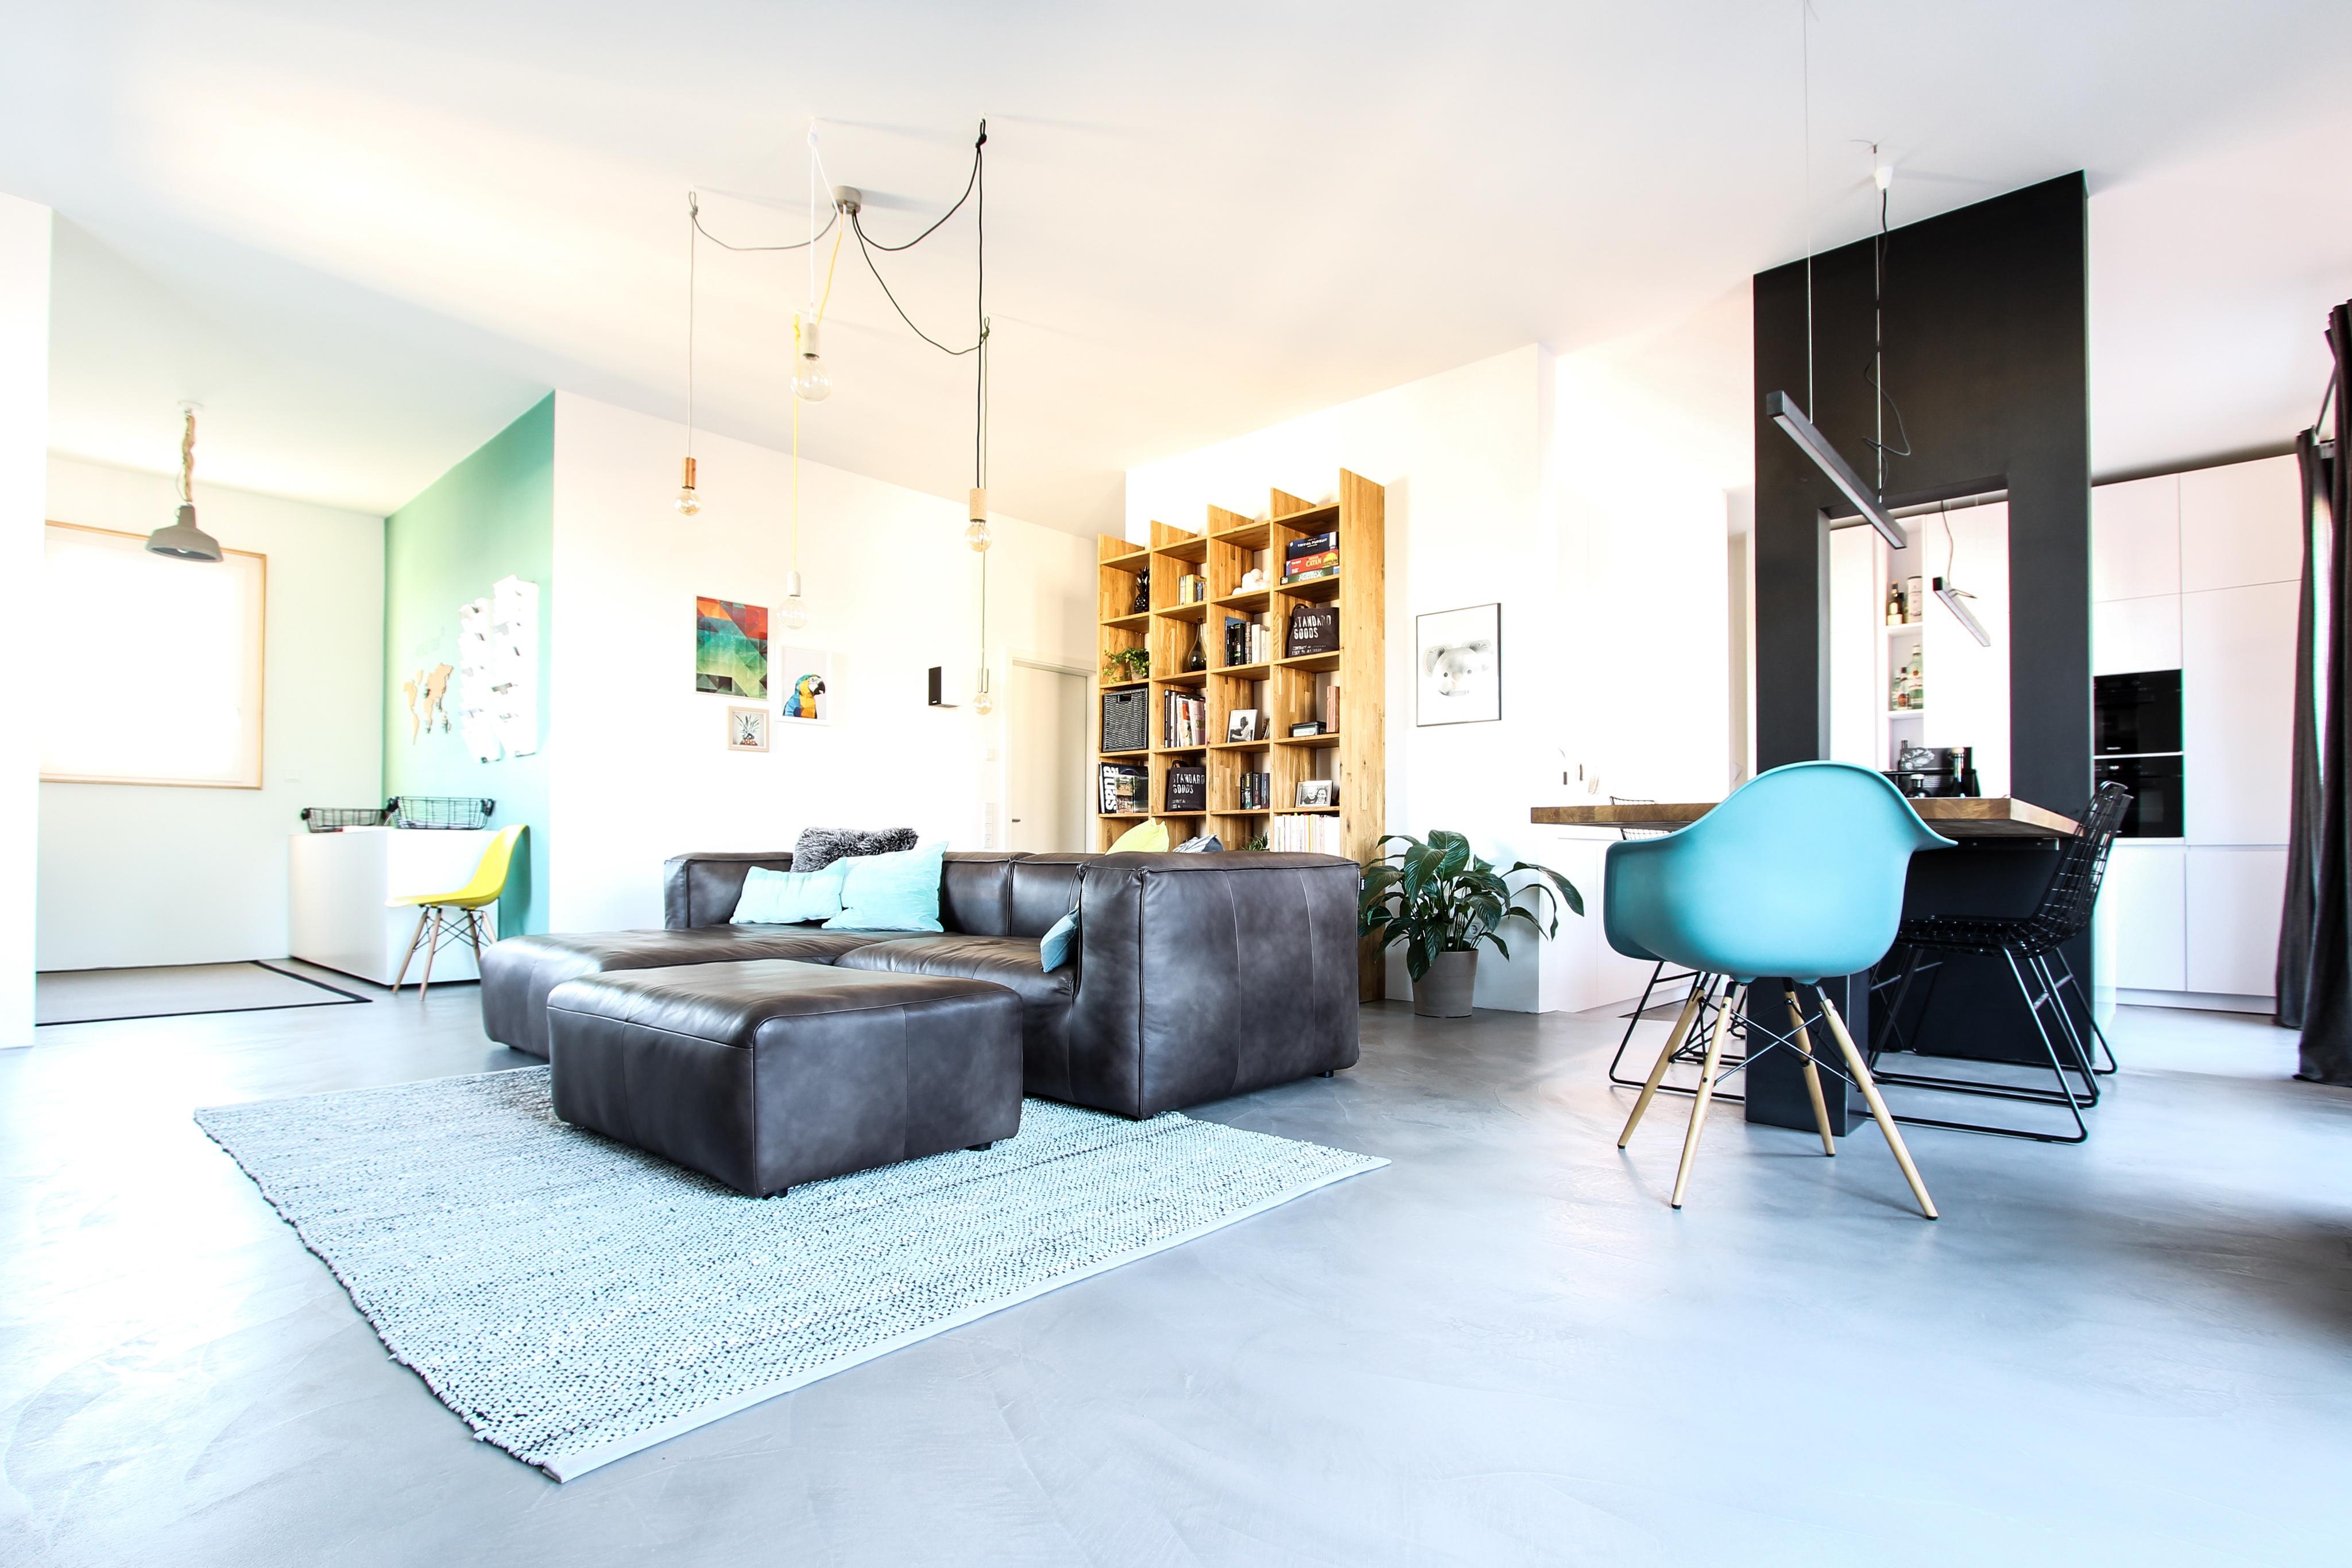 Arbeiten - Wohnen - Essen - Kochen #wandfarbe ©EXTRAVIEL office & home design